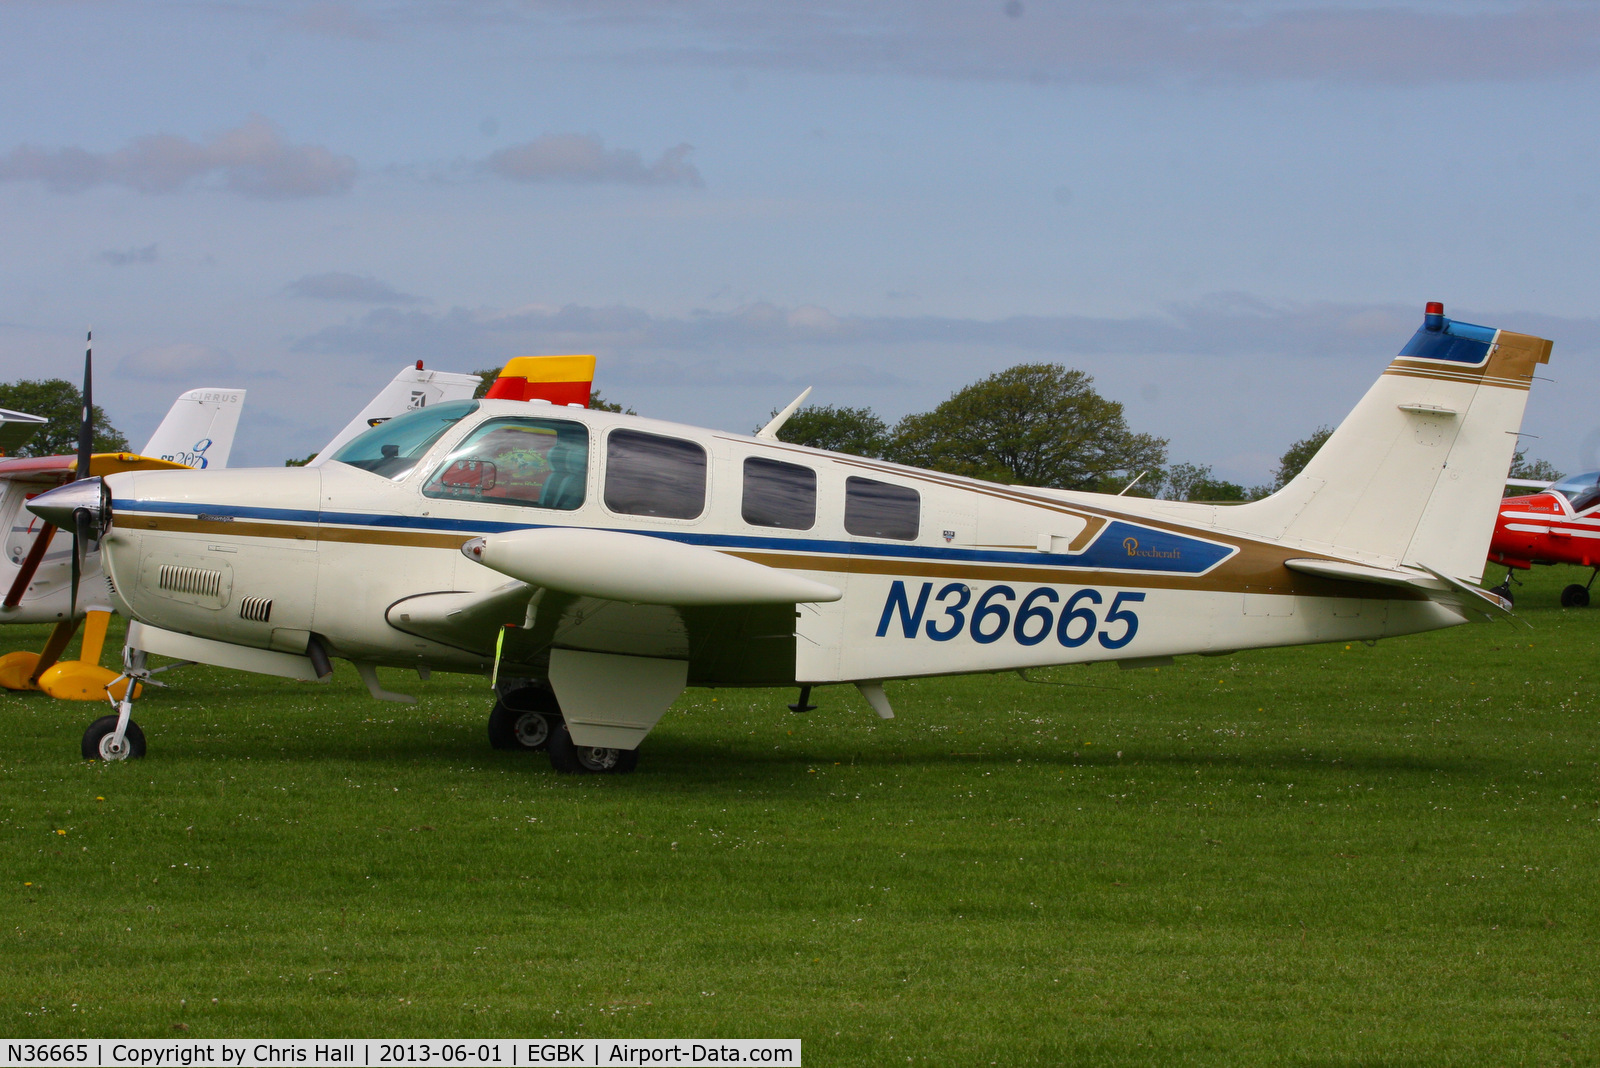 N36665, 1980 Beech A36 Bonanza 36 C/N E-1696, at AeroExpo 2013